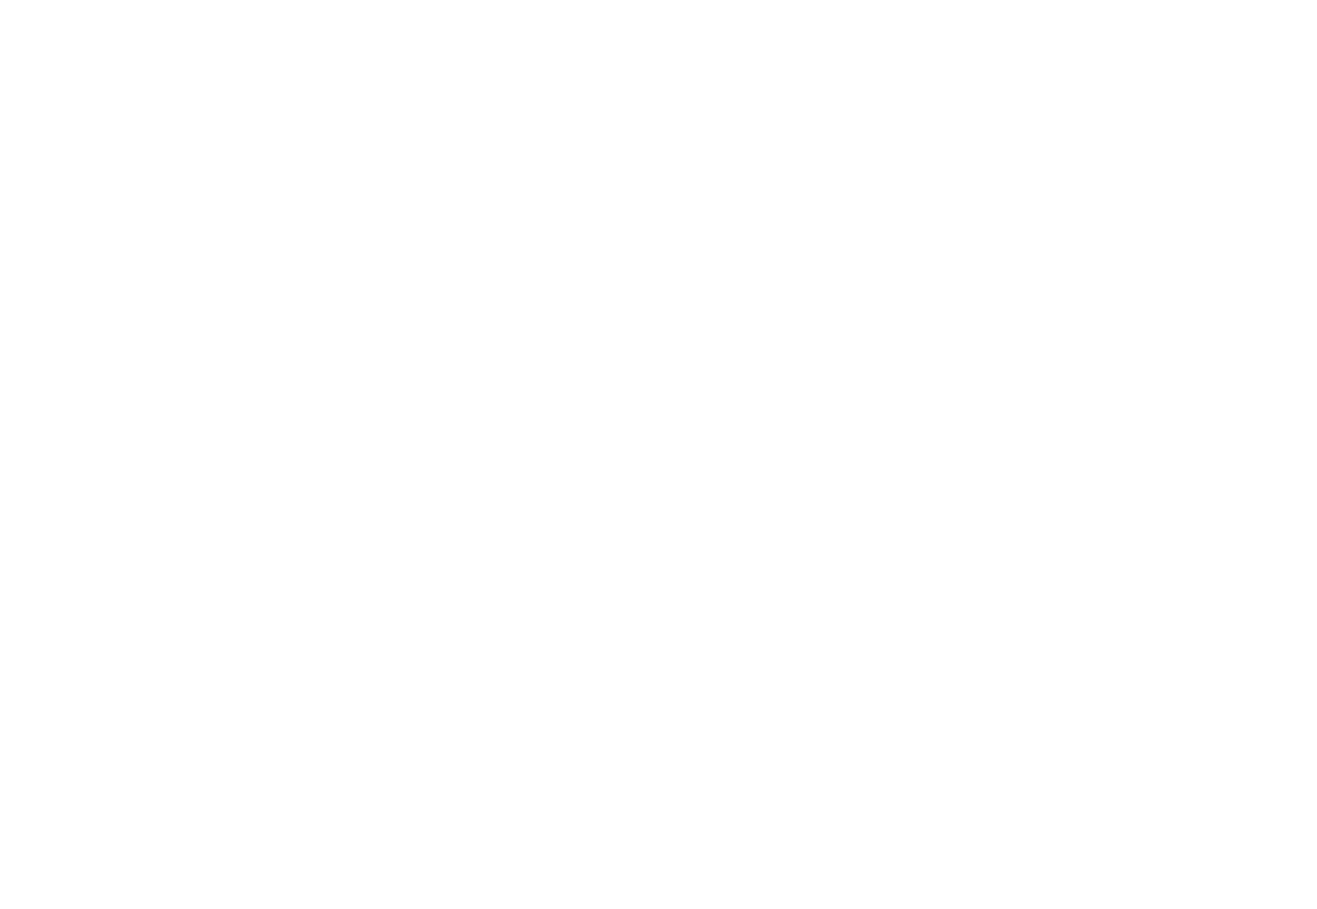 Кейс сервиса BRANDNATION - Логотип экологического предприятия. Брендинговое агентство BRANDNATION в Москве и Санкт-Петербурге. Услуги: разработка логотипа и фирменного стиля, дизайн упаковки, брендбук, ребрендинг, разработка сайта.